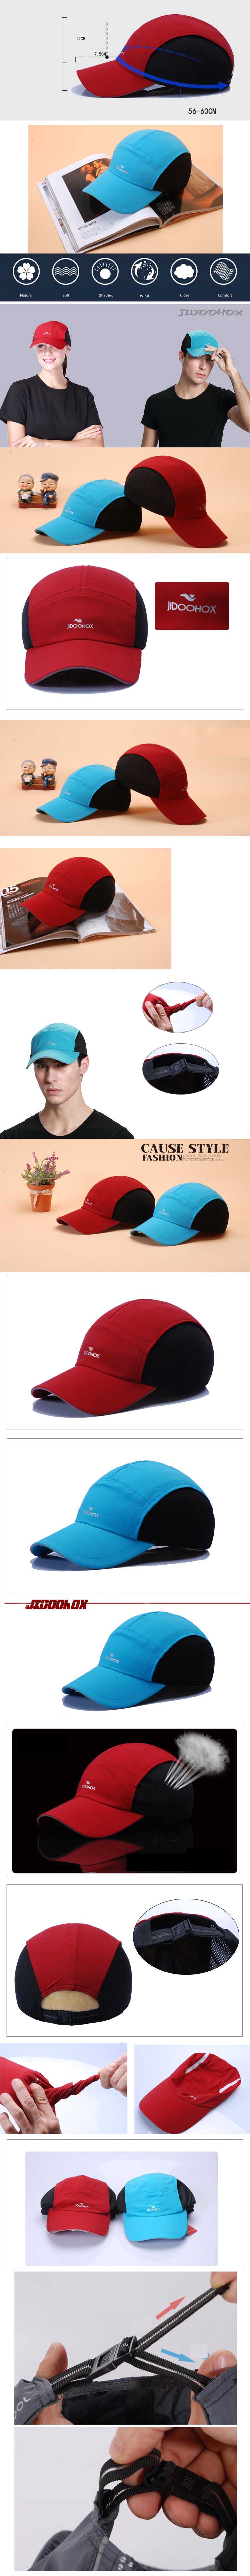 jual topi pria model casual terbuat dari bahan polyester berkualitas nyaman dipakai tidak panas, temukan koleksi topi pria terlengkap online hanya di sini